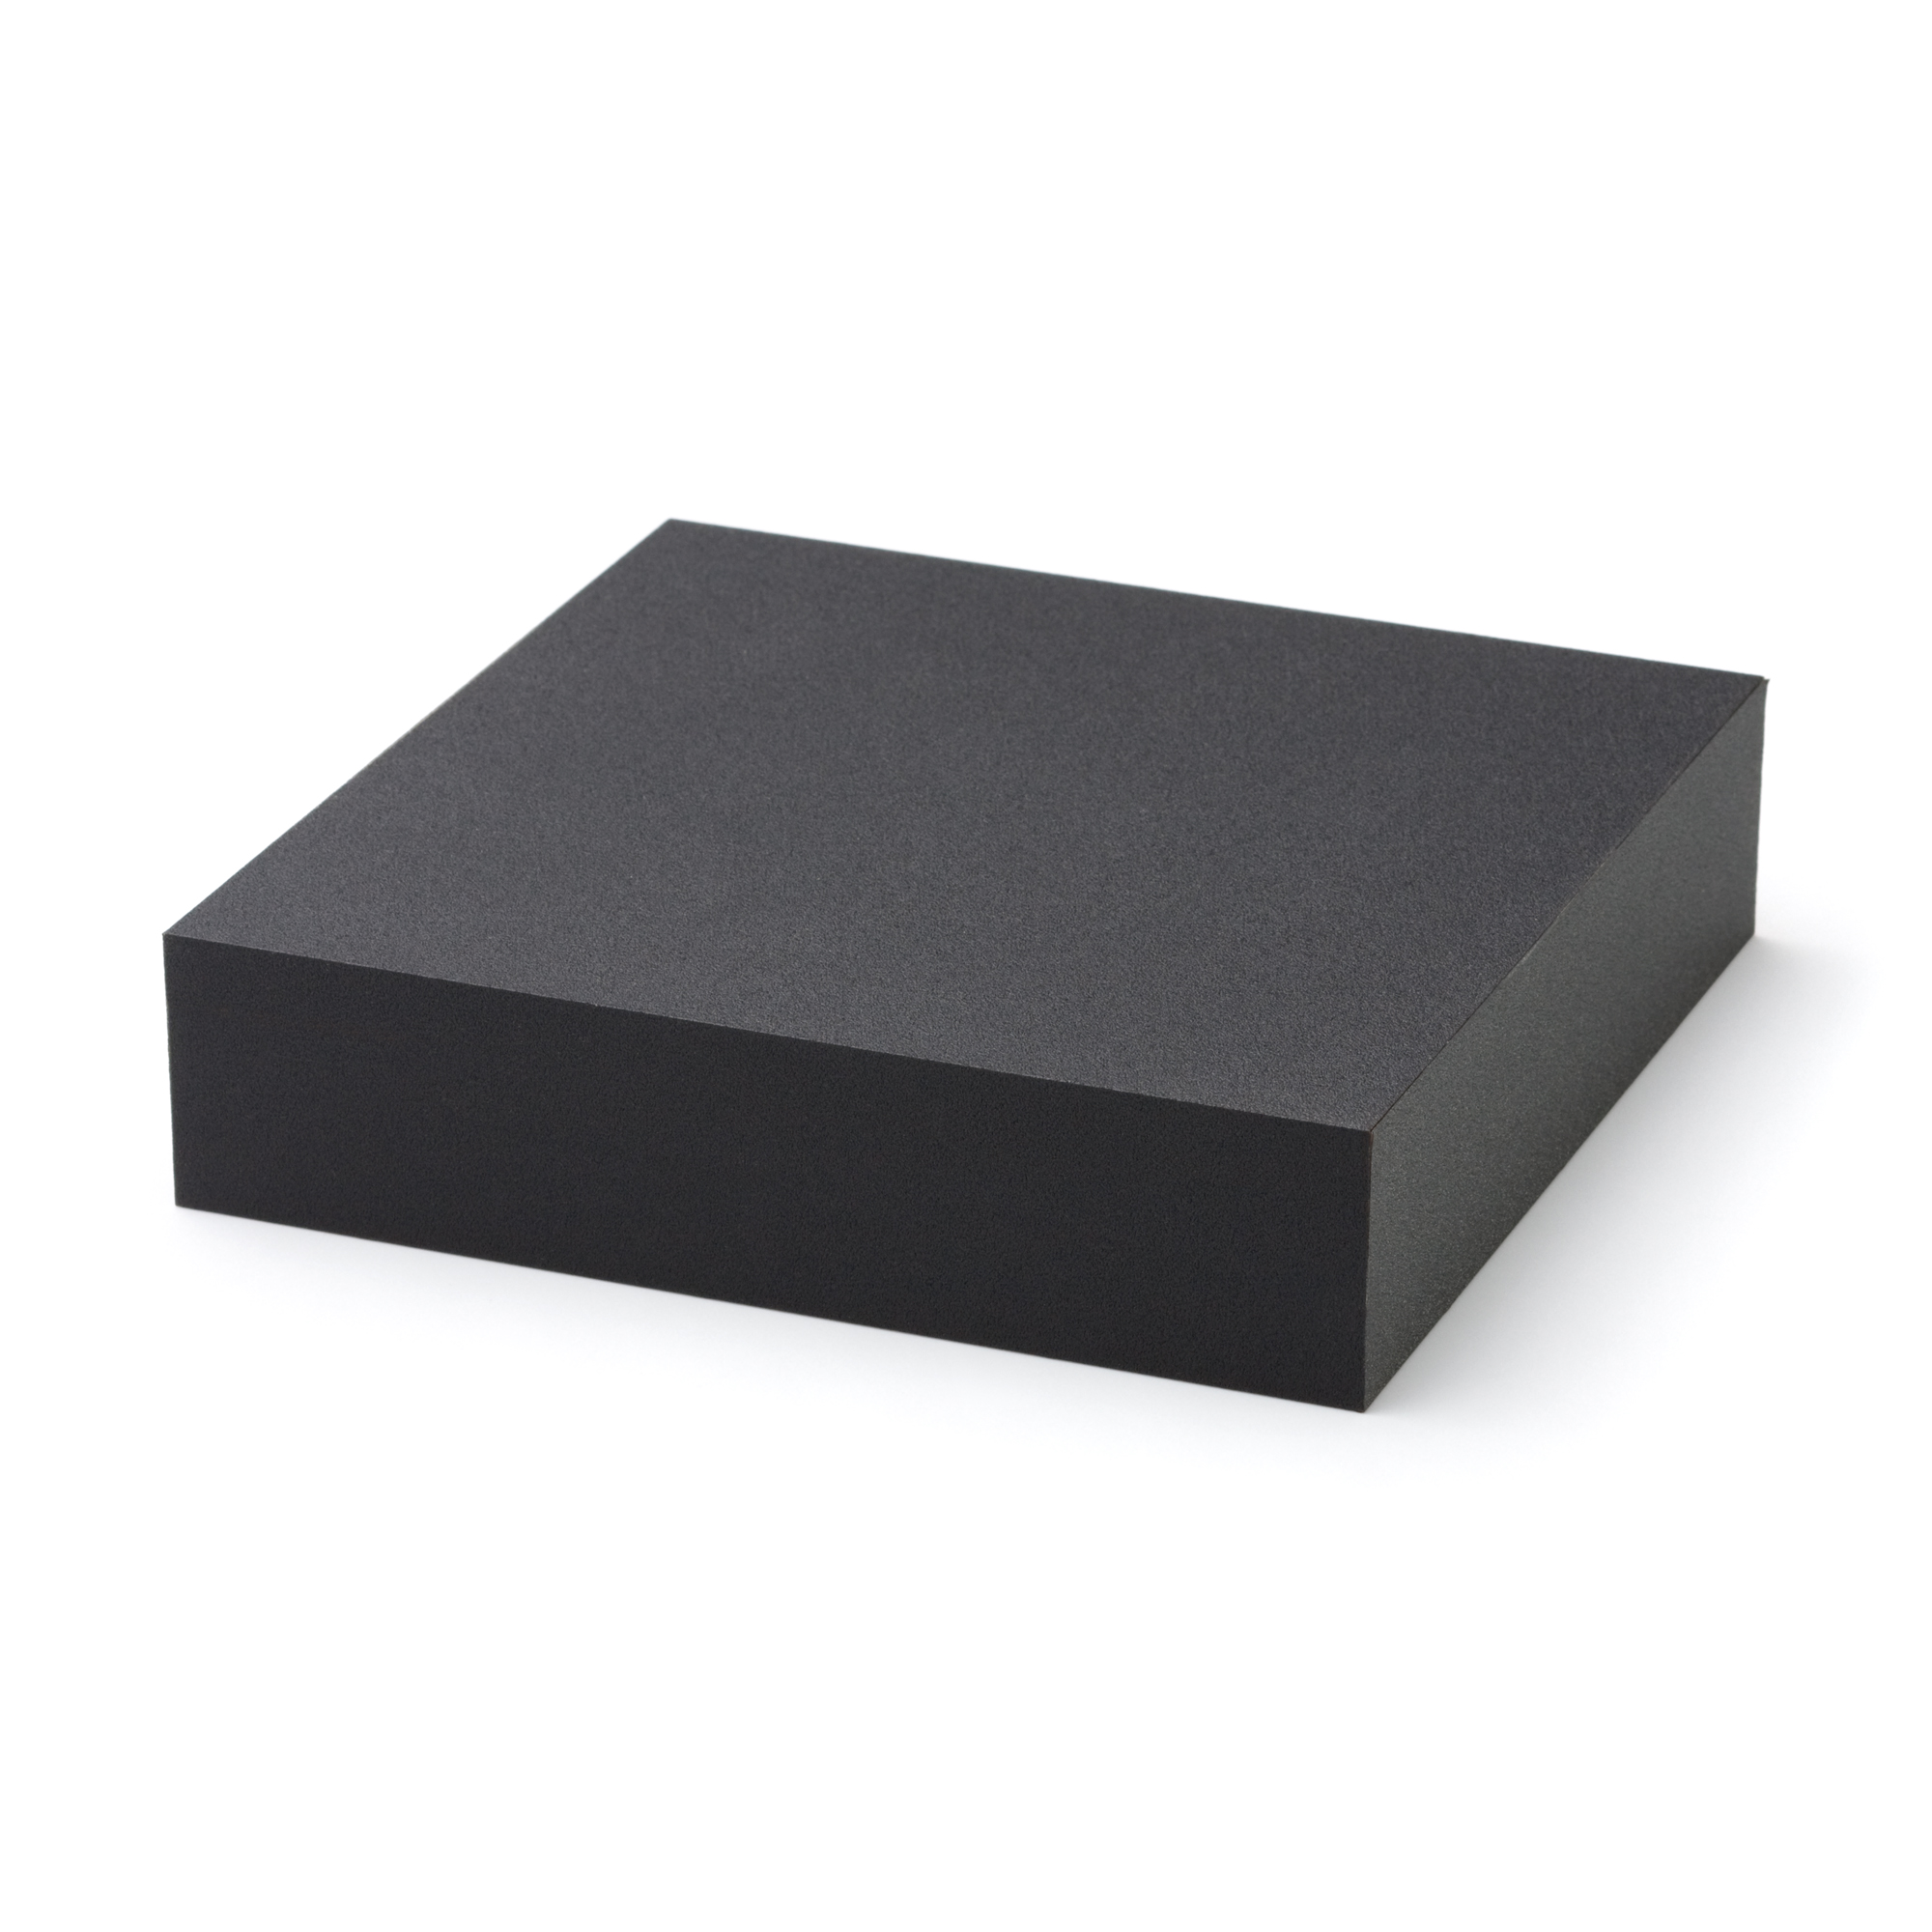 Blackbox Kette, 170 x 170 x 40 mm